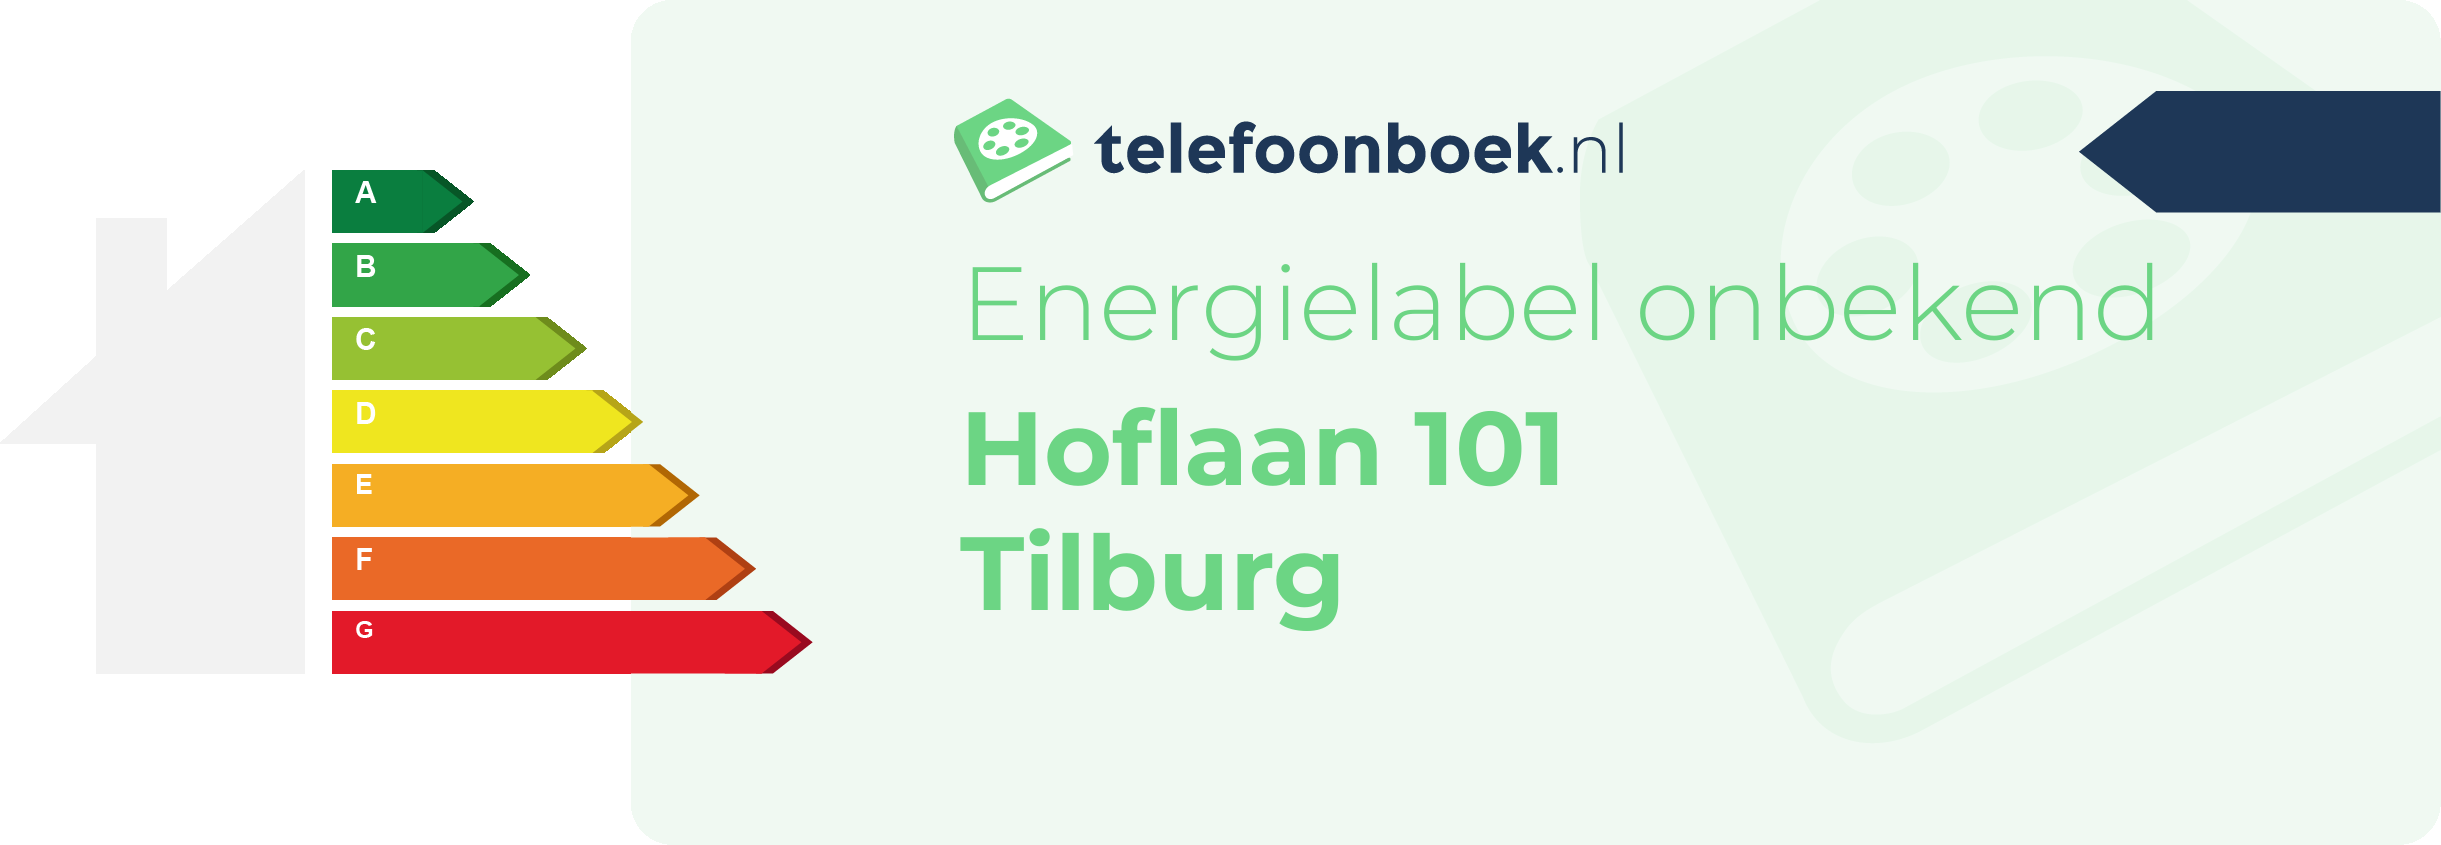 Energielabel Hoflaan 101 Tilburg